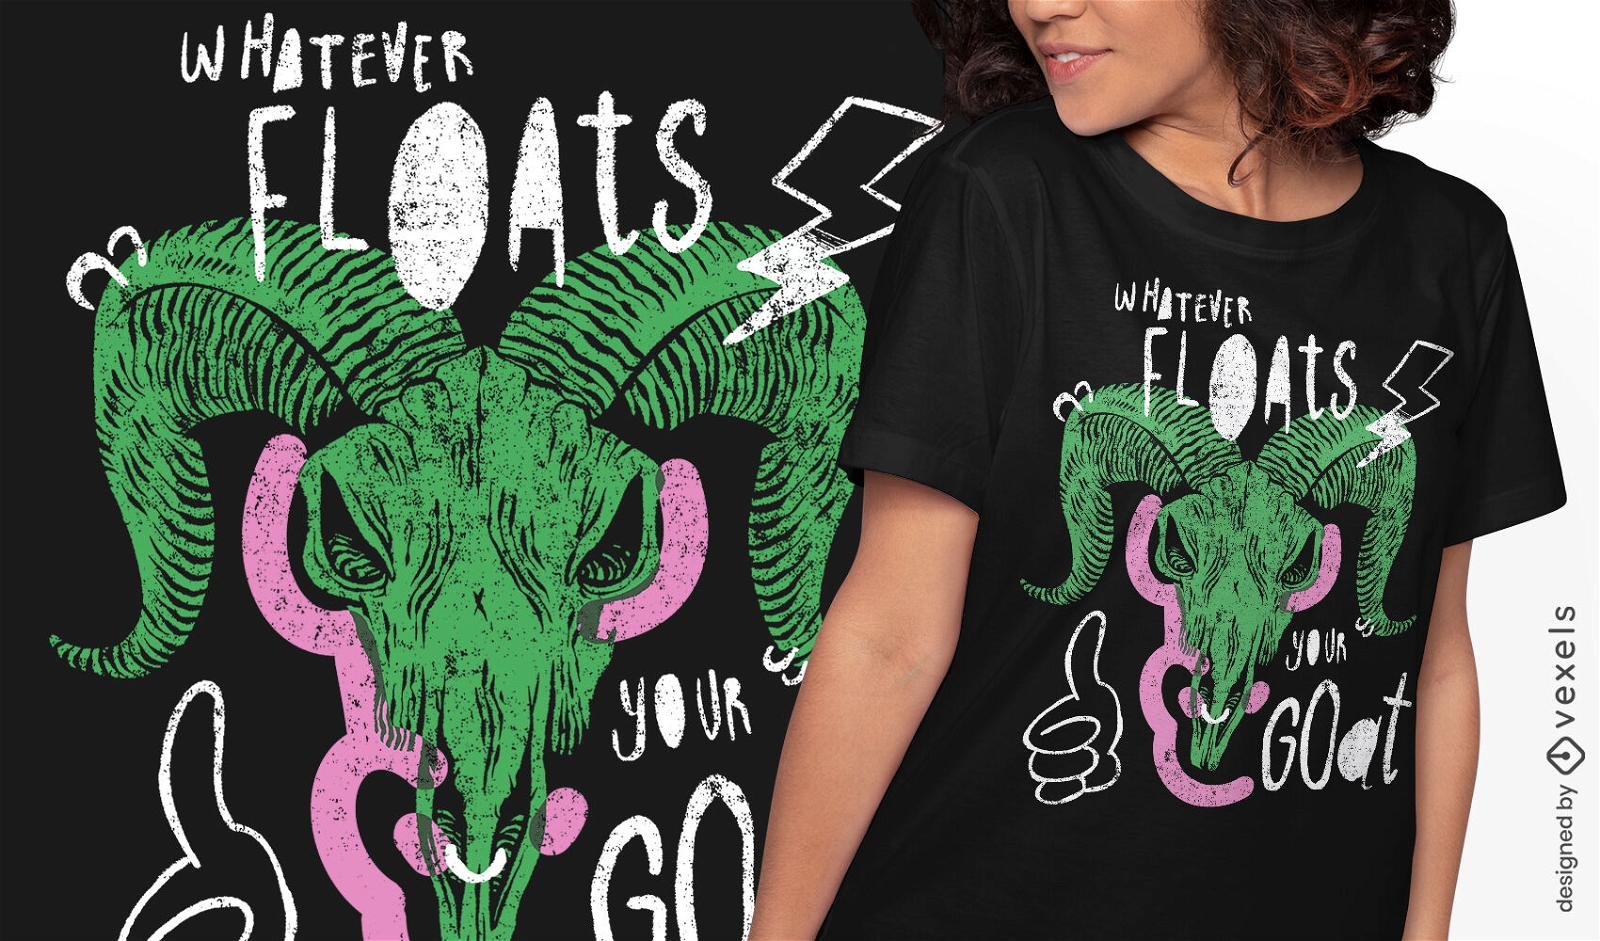 Goat skull doodle t-shirt design